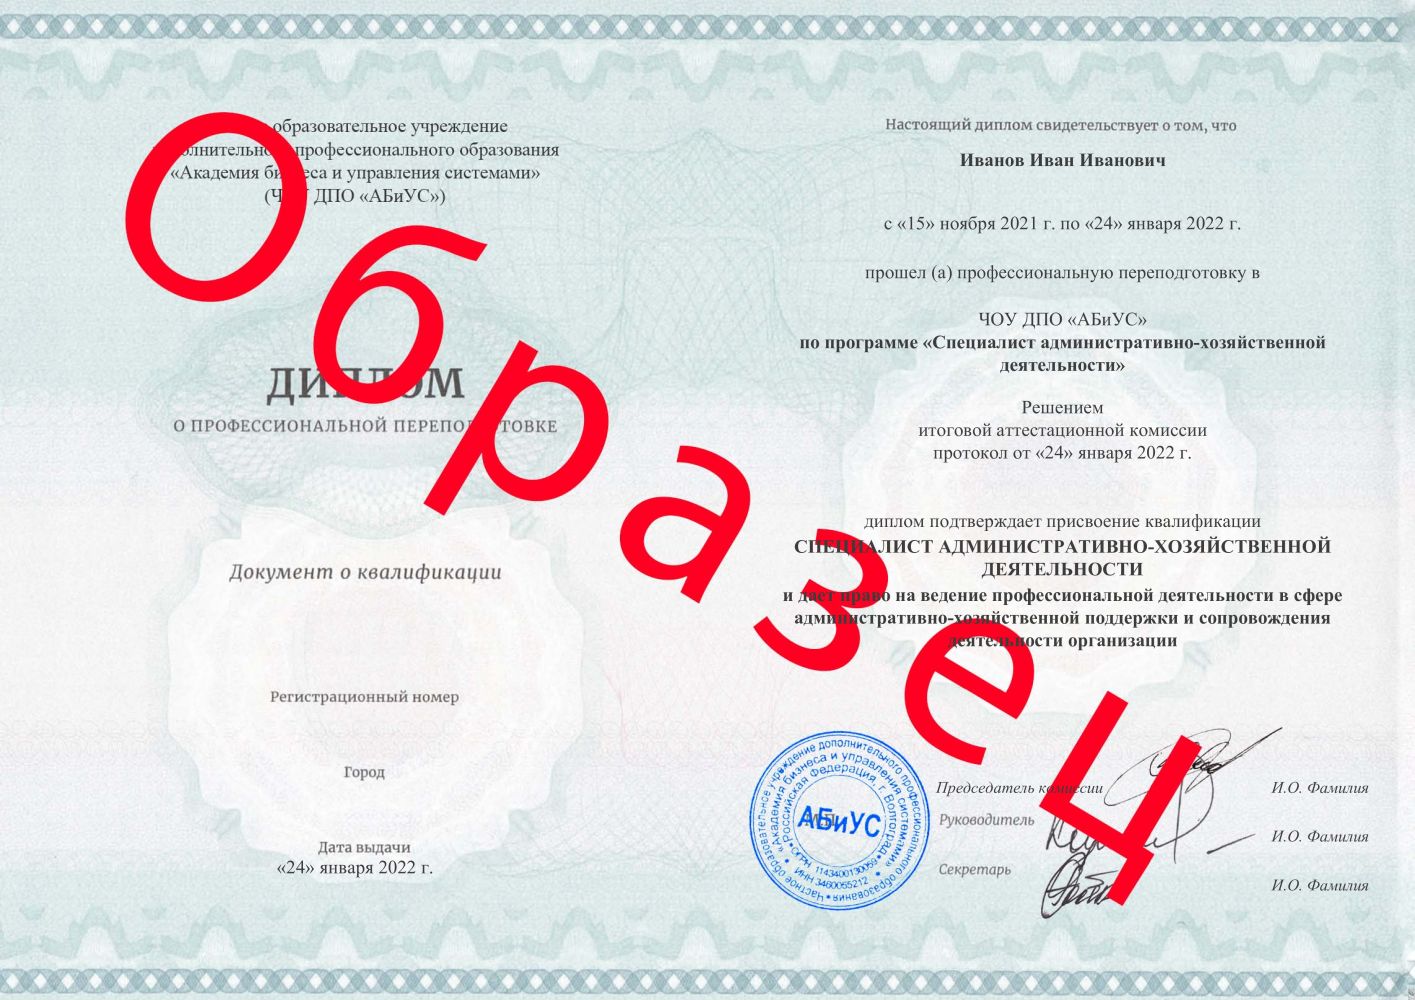 Диплом Специалист административно-хозяйственной деятельности 260 часов 12688 руб.